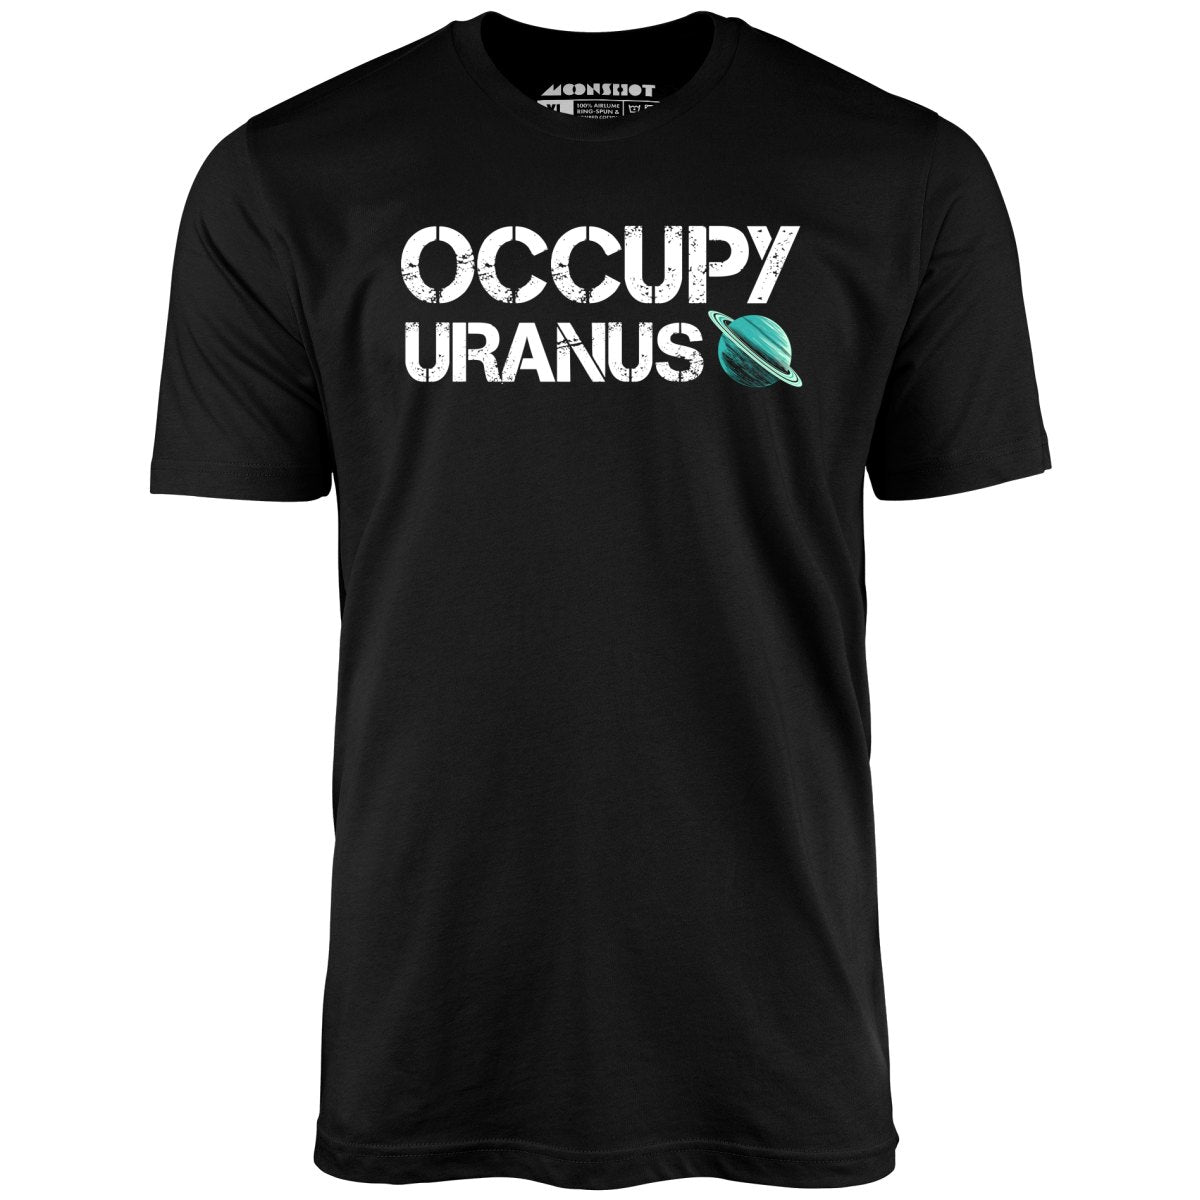 Occupy Uranus - Unisex T-Shirt